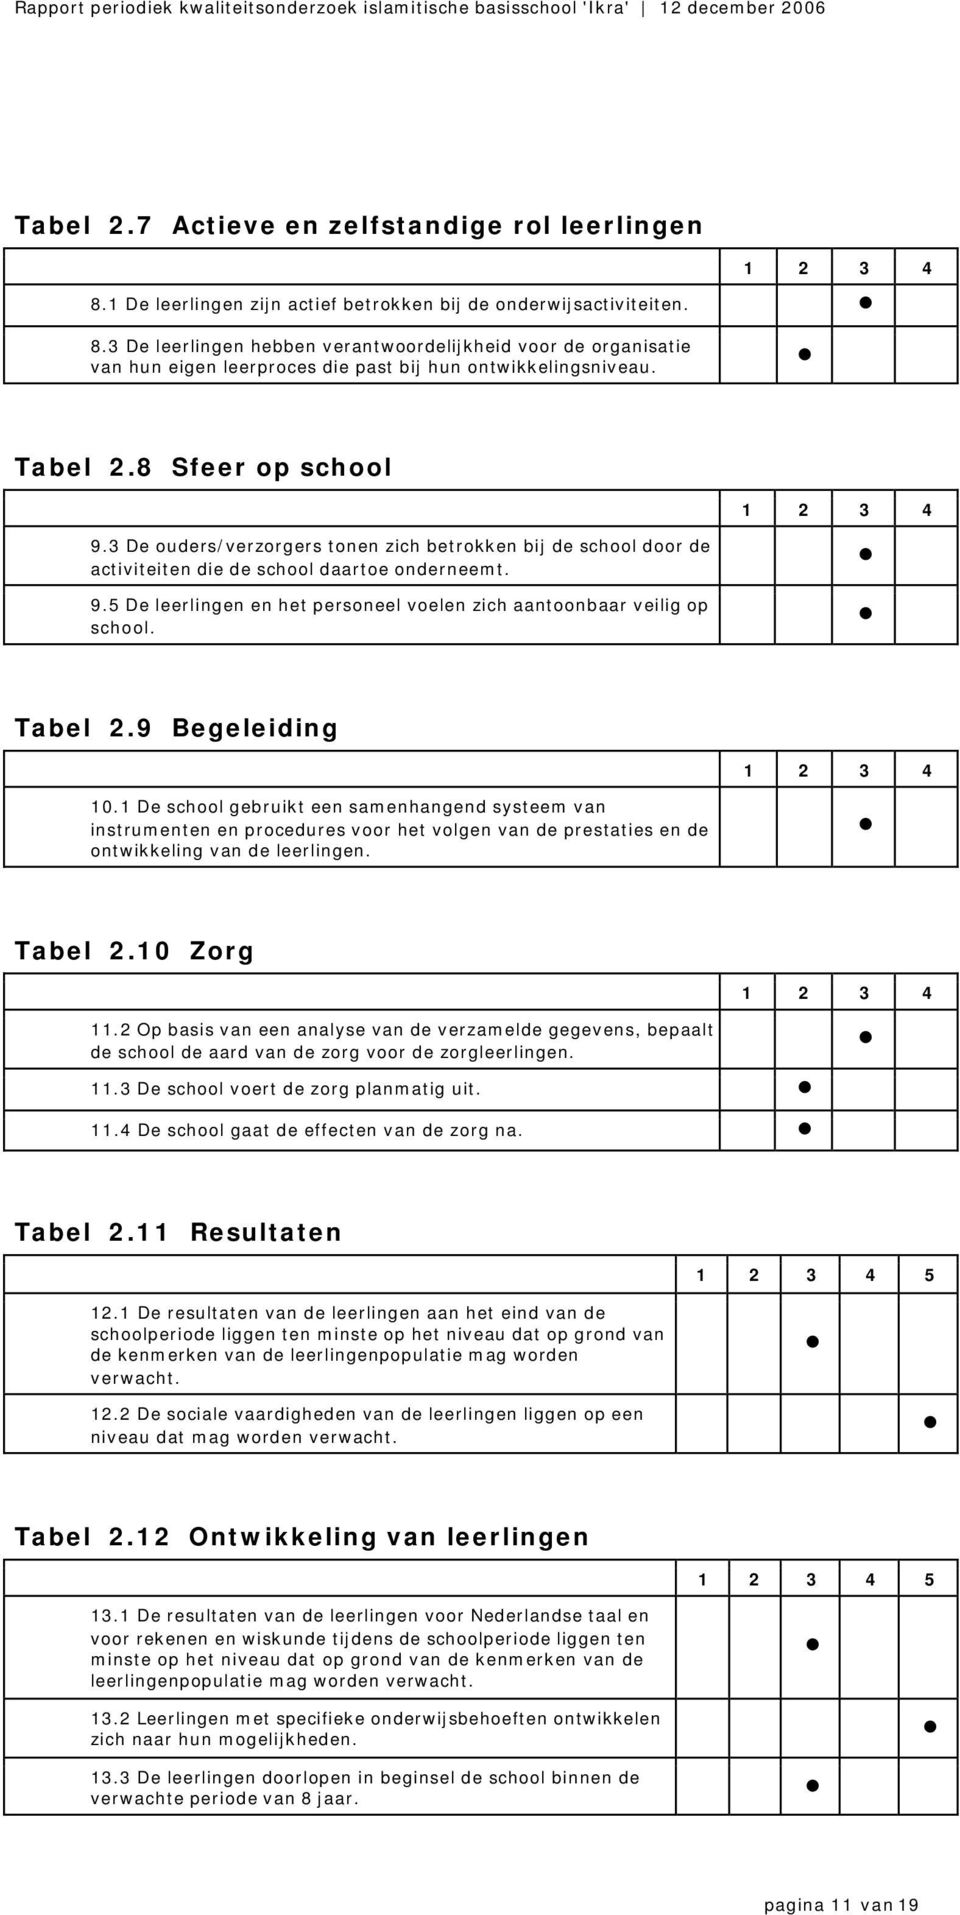 Tabel 2.9 Begeleiding 10.1 De school gebruikt een samenhangend systeem van instrumenten en procedures voor het volgen van de prestaties en de ontwikkeling van de leerlingen. Tabel 2.10 Zorg 11.